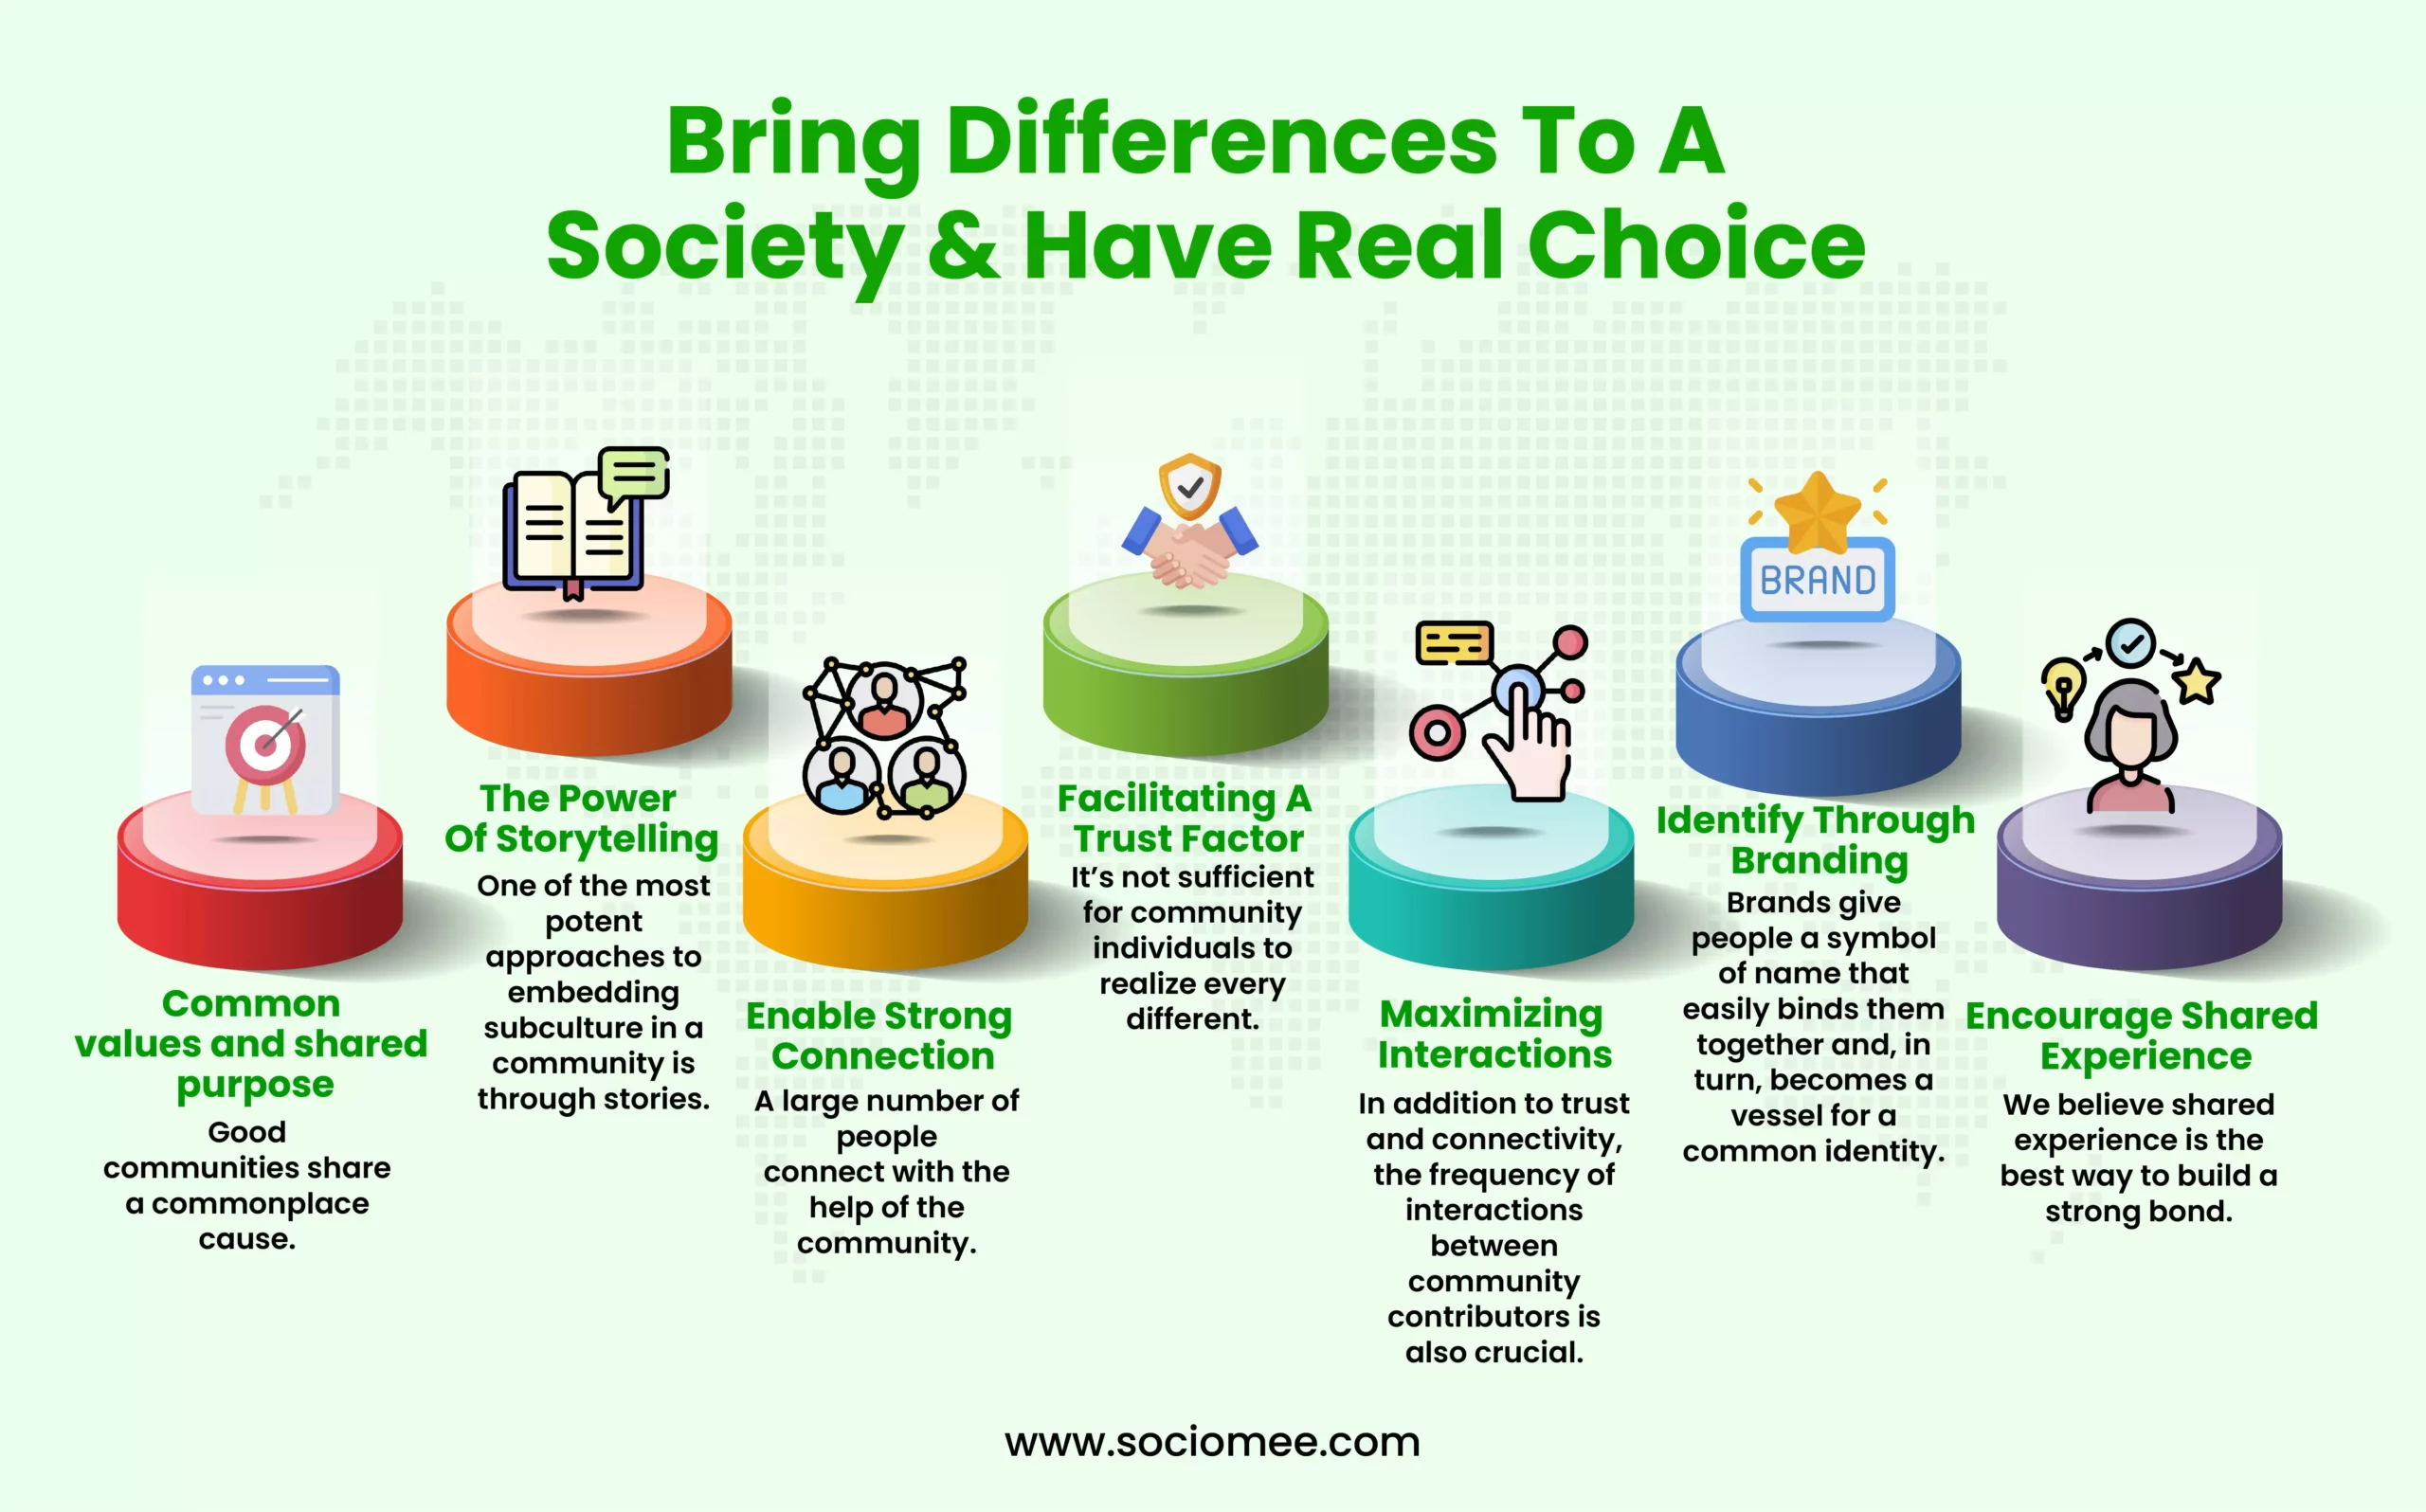 Society & Have Real Choice